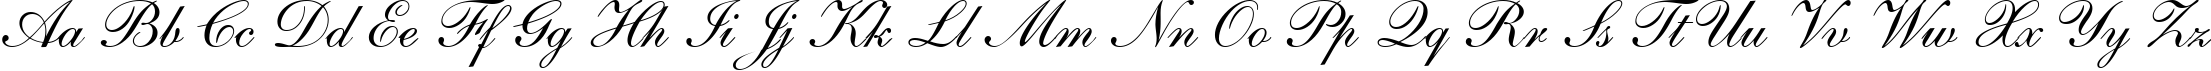 Пример написания английского алфавита шрифтом Shelley Andante BT